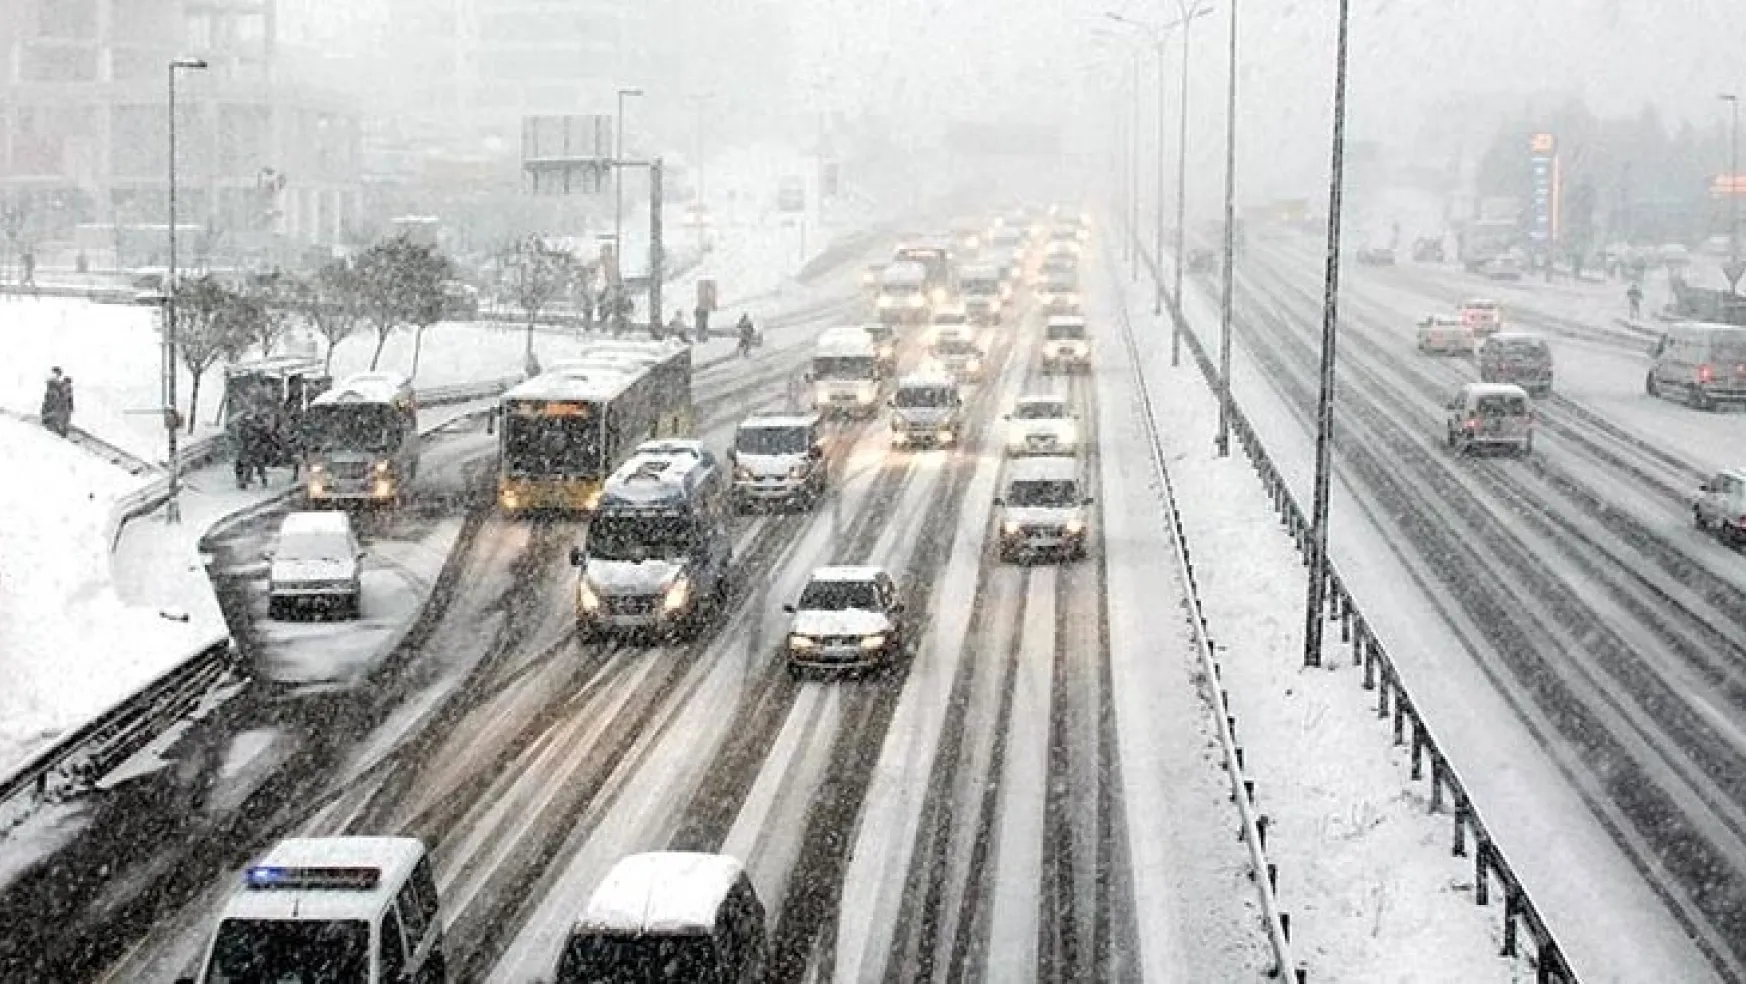 İstanbul'da kar alarmı